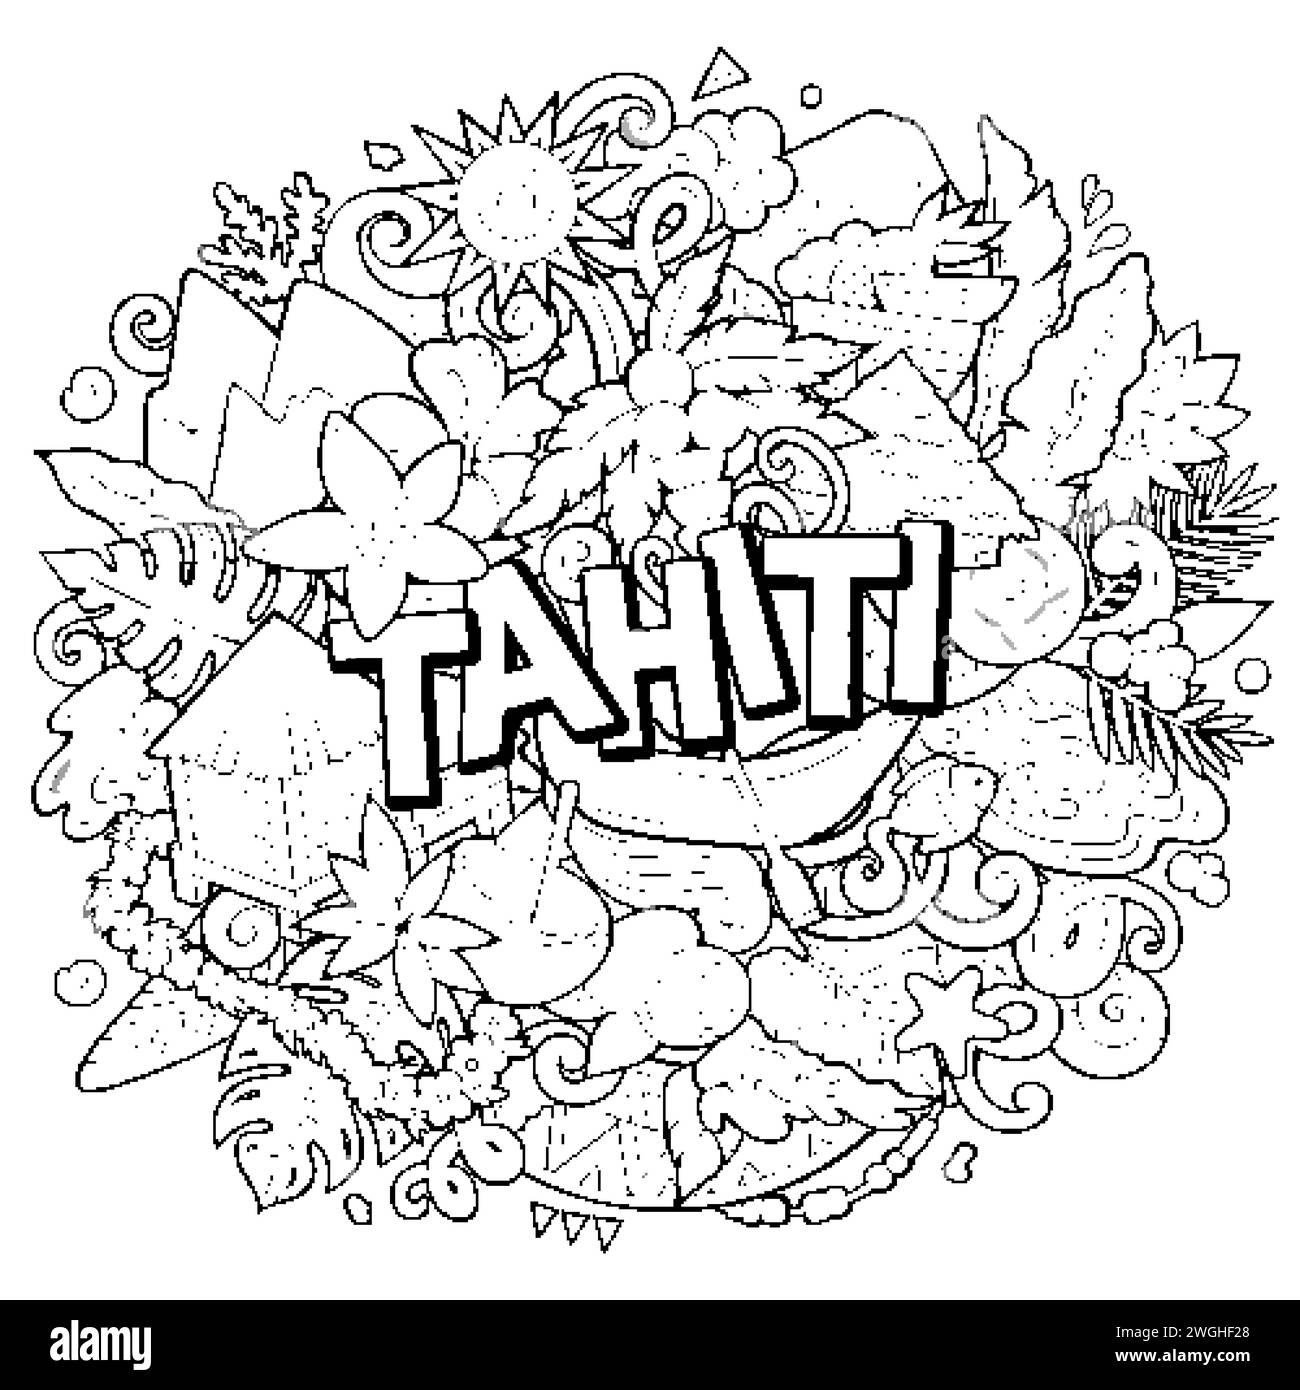 Tahiti dessin à la main dessin animé illustration doodle. Fond de vecteur amusant créatif. Texte manuscrit avec éléments et objets. Composition de dessin au trait Illustration de Vecteur